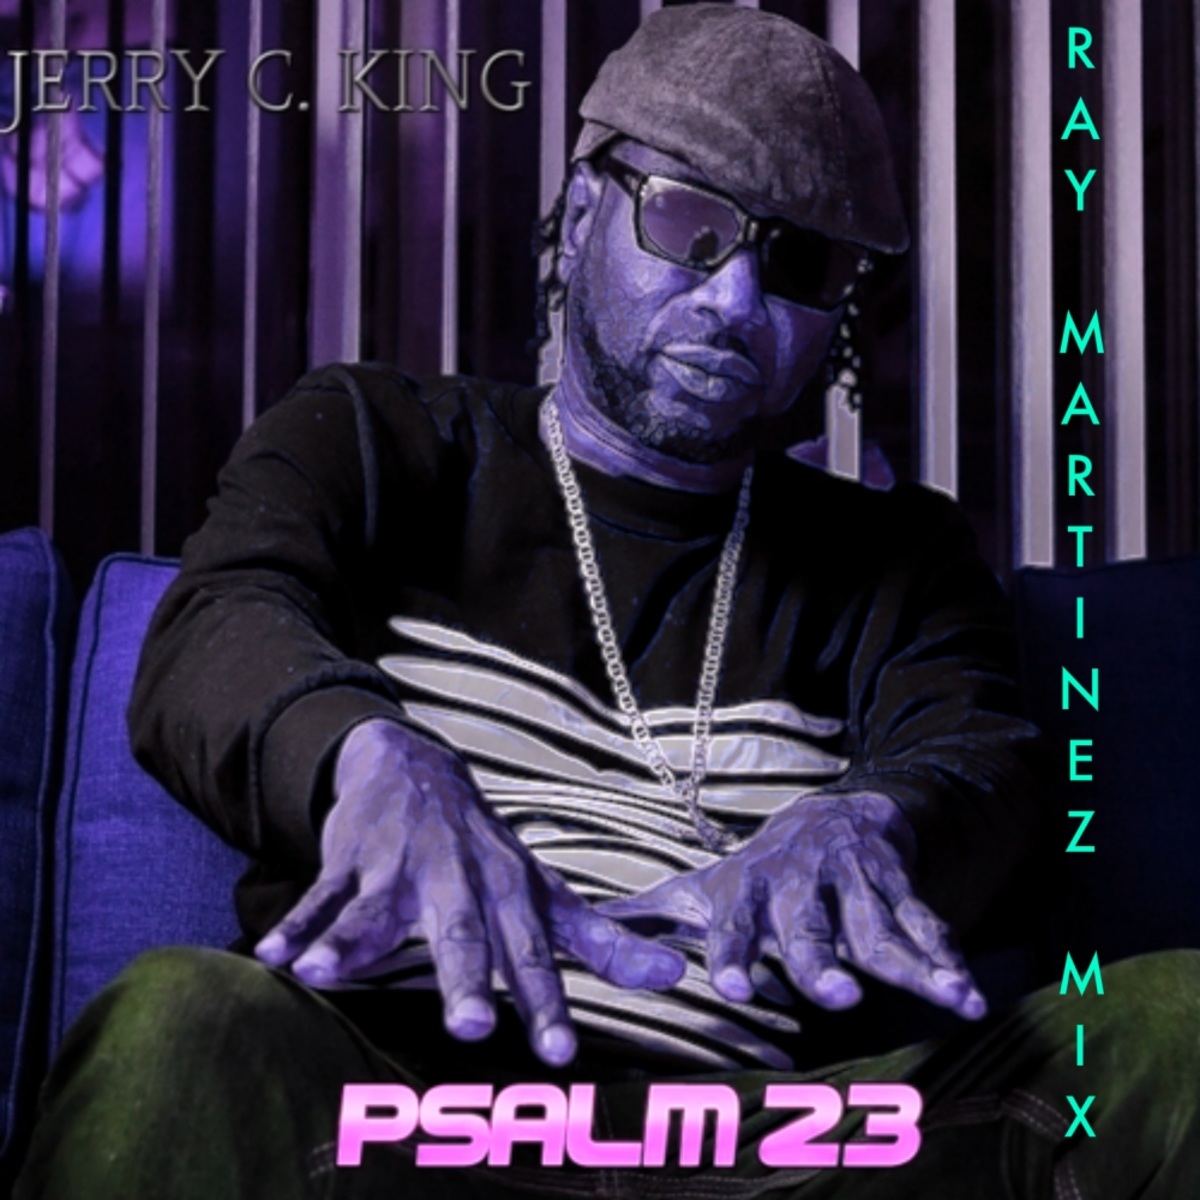 Jerry C. King - Psalm 23 (Ray Martinez Mix) / Kingdom